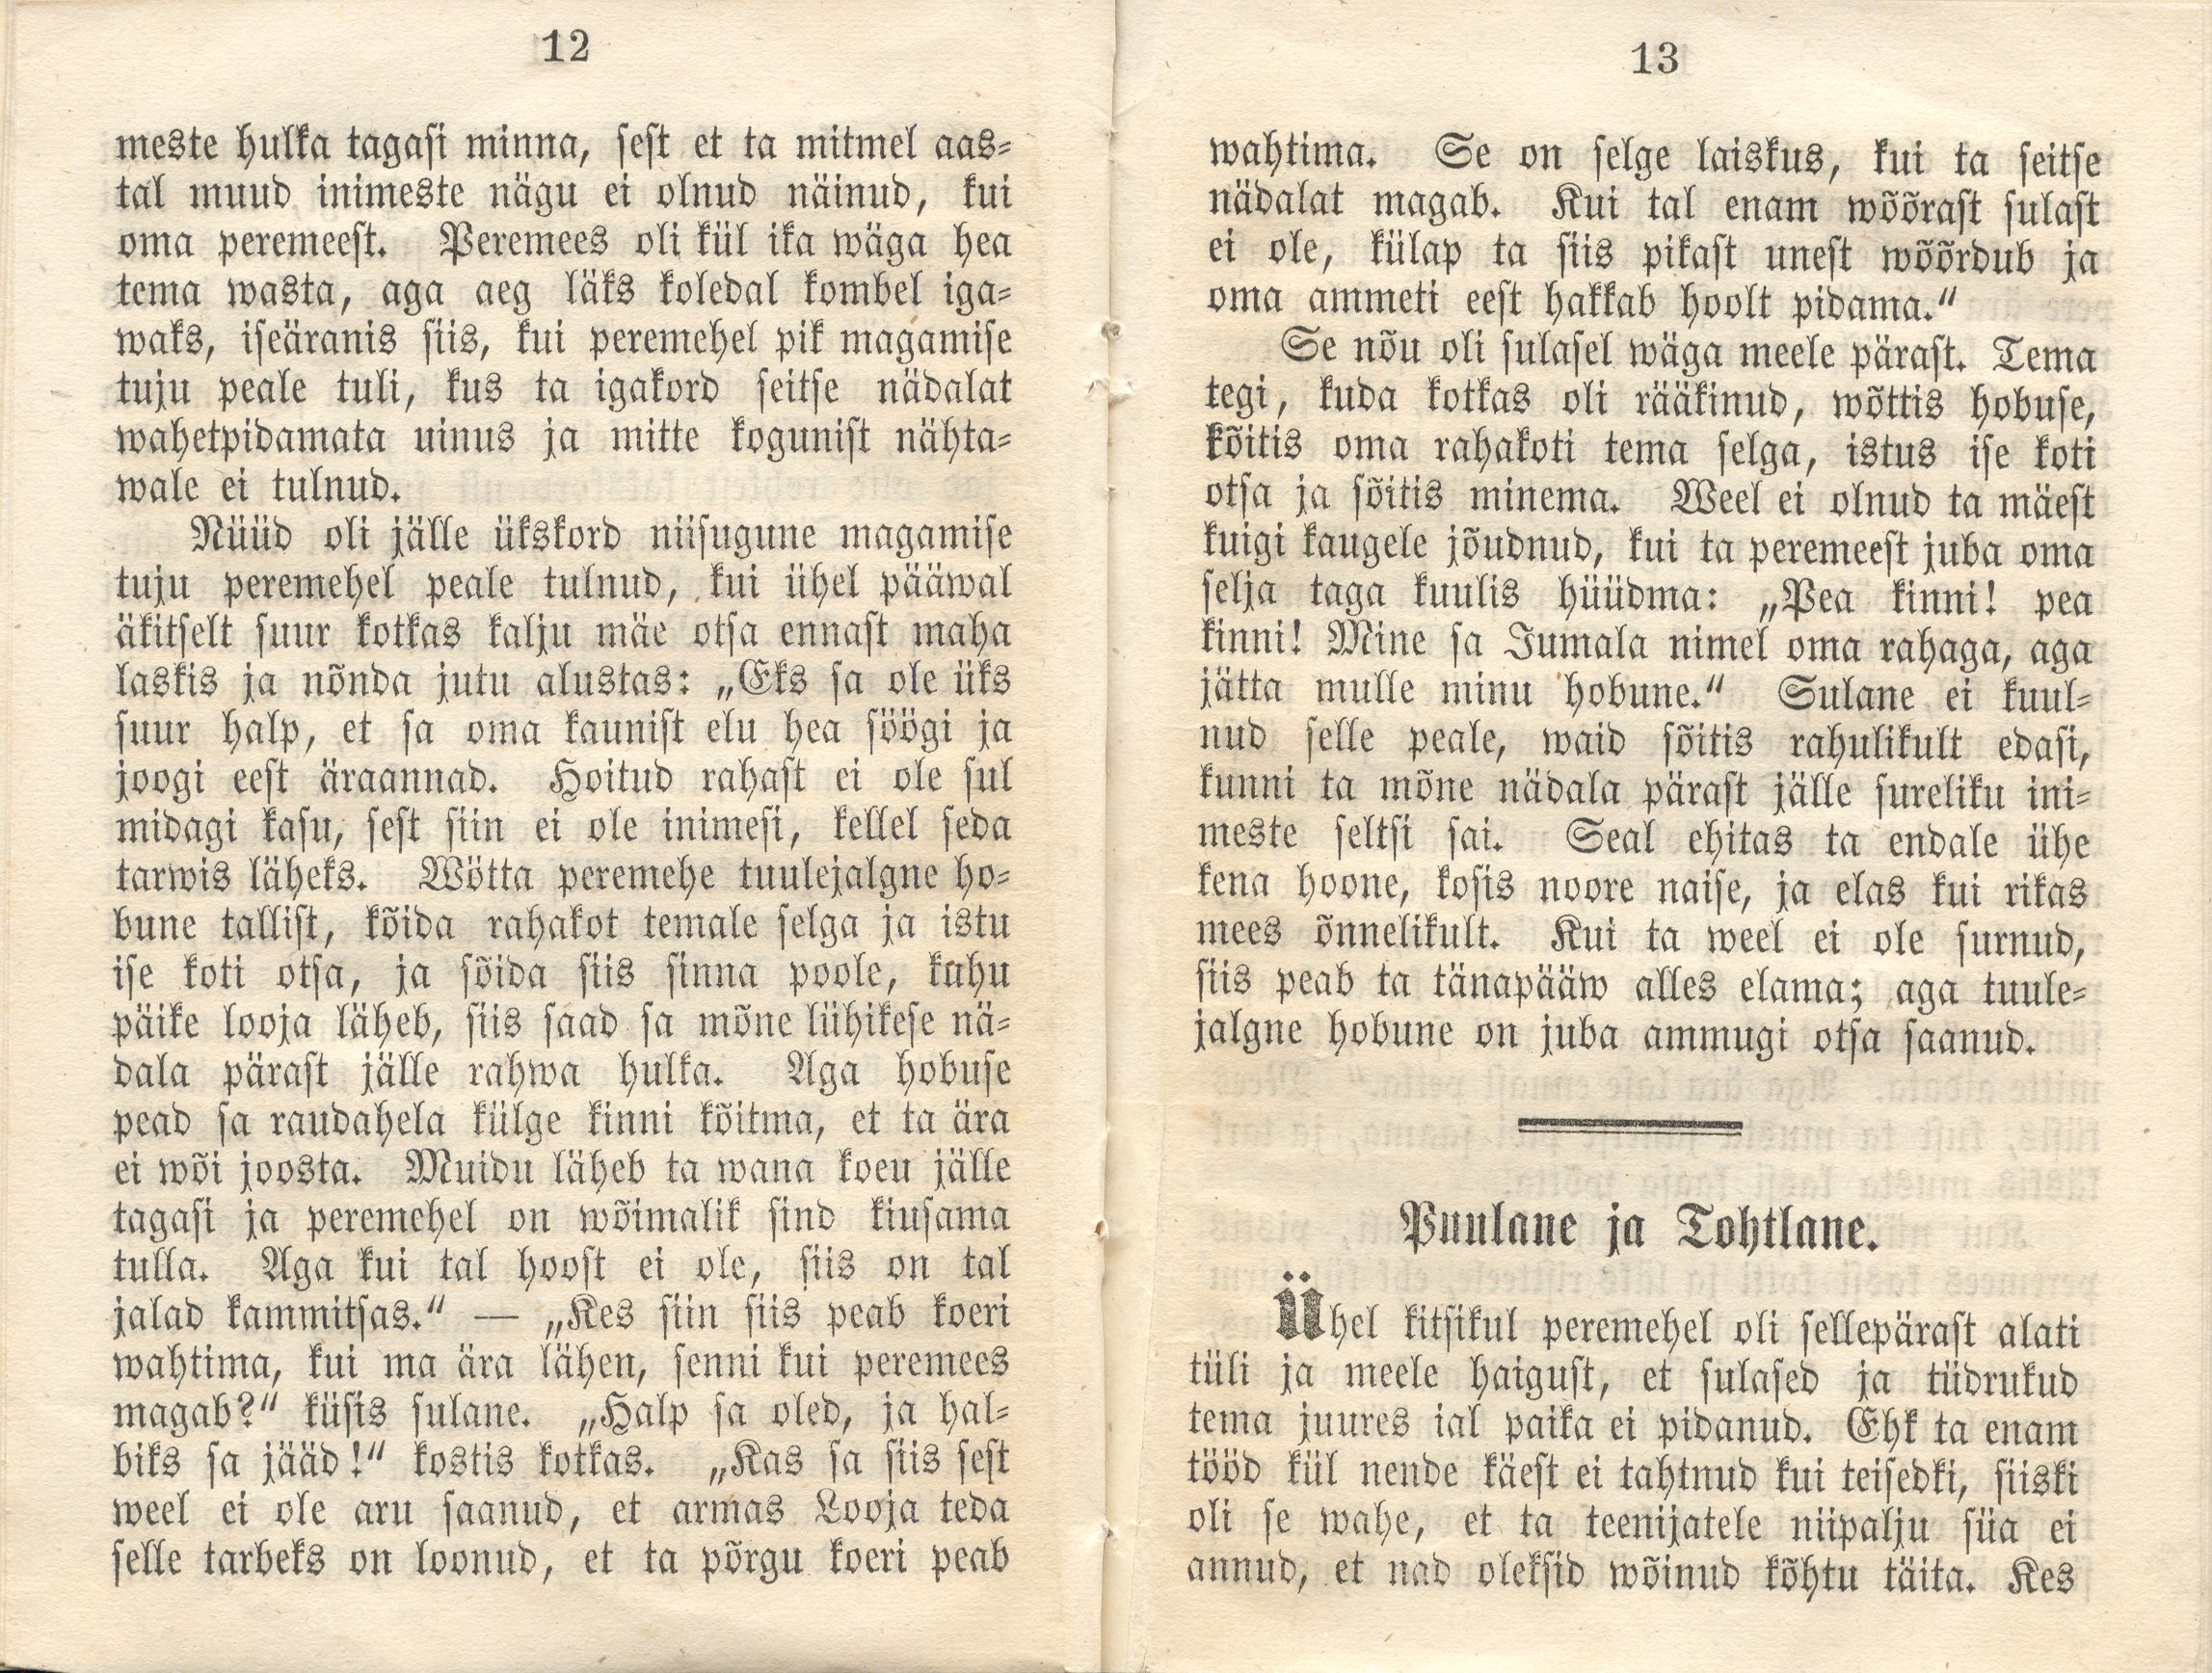 Eesti rahva ennemuistsed jutud ja vanad laulud (1860) | 64. (12-13) Main body of text